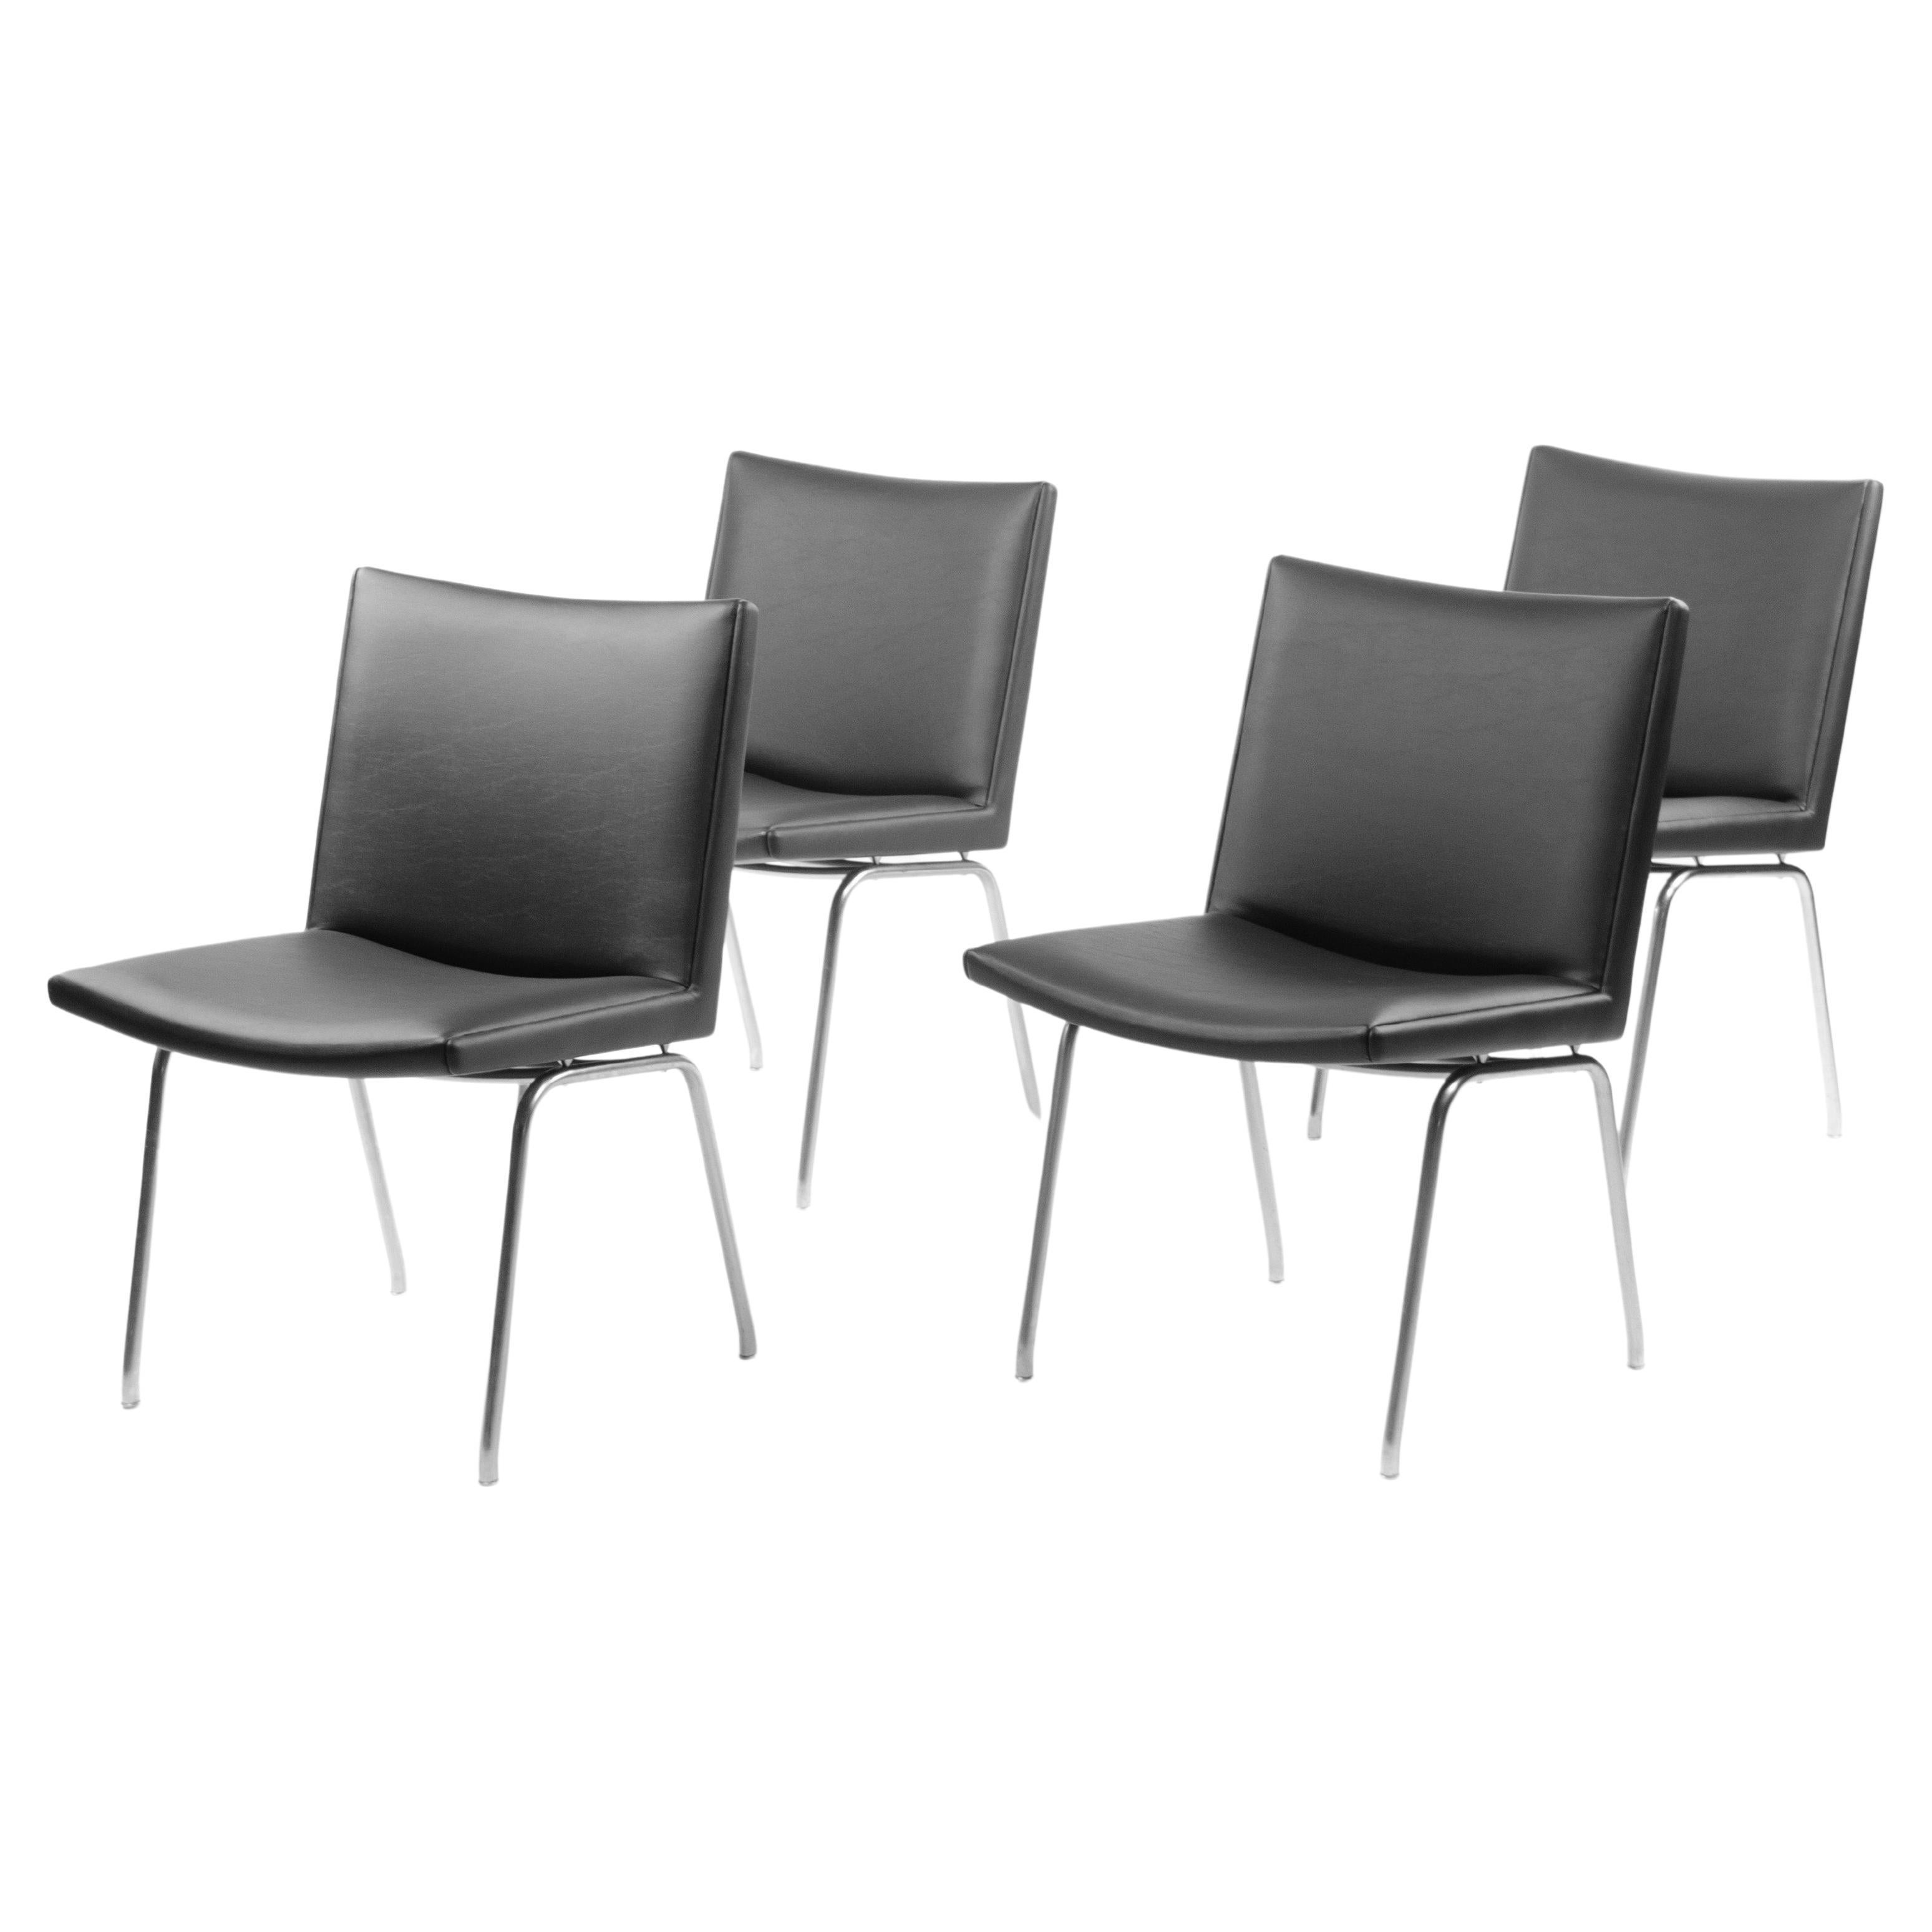 Nous proposons à la vente un ensemble de dix (le prix indiqué comprend les dix chaises) chaises d'aéroport Hans Wegner AP38, produites par A.P. Volé au Danemark dans les années 1960.

Les chaises sont en superbe état et sont recouvertes d'une